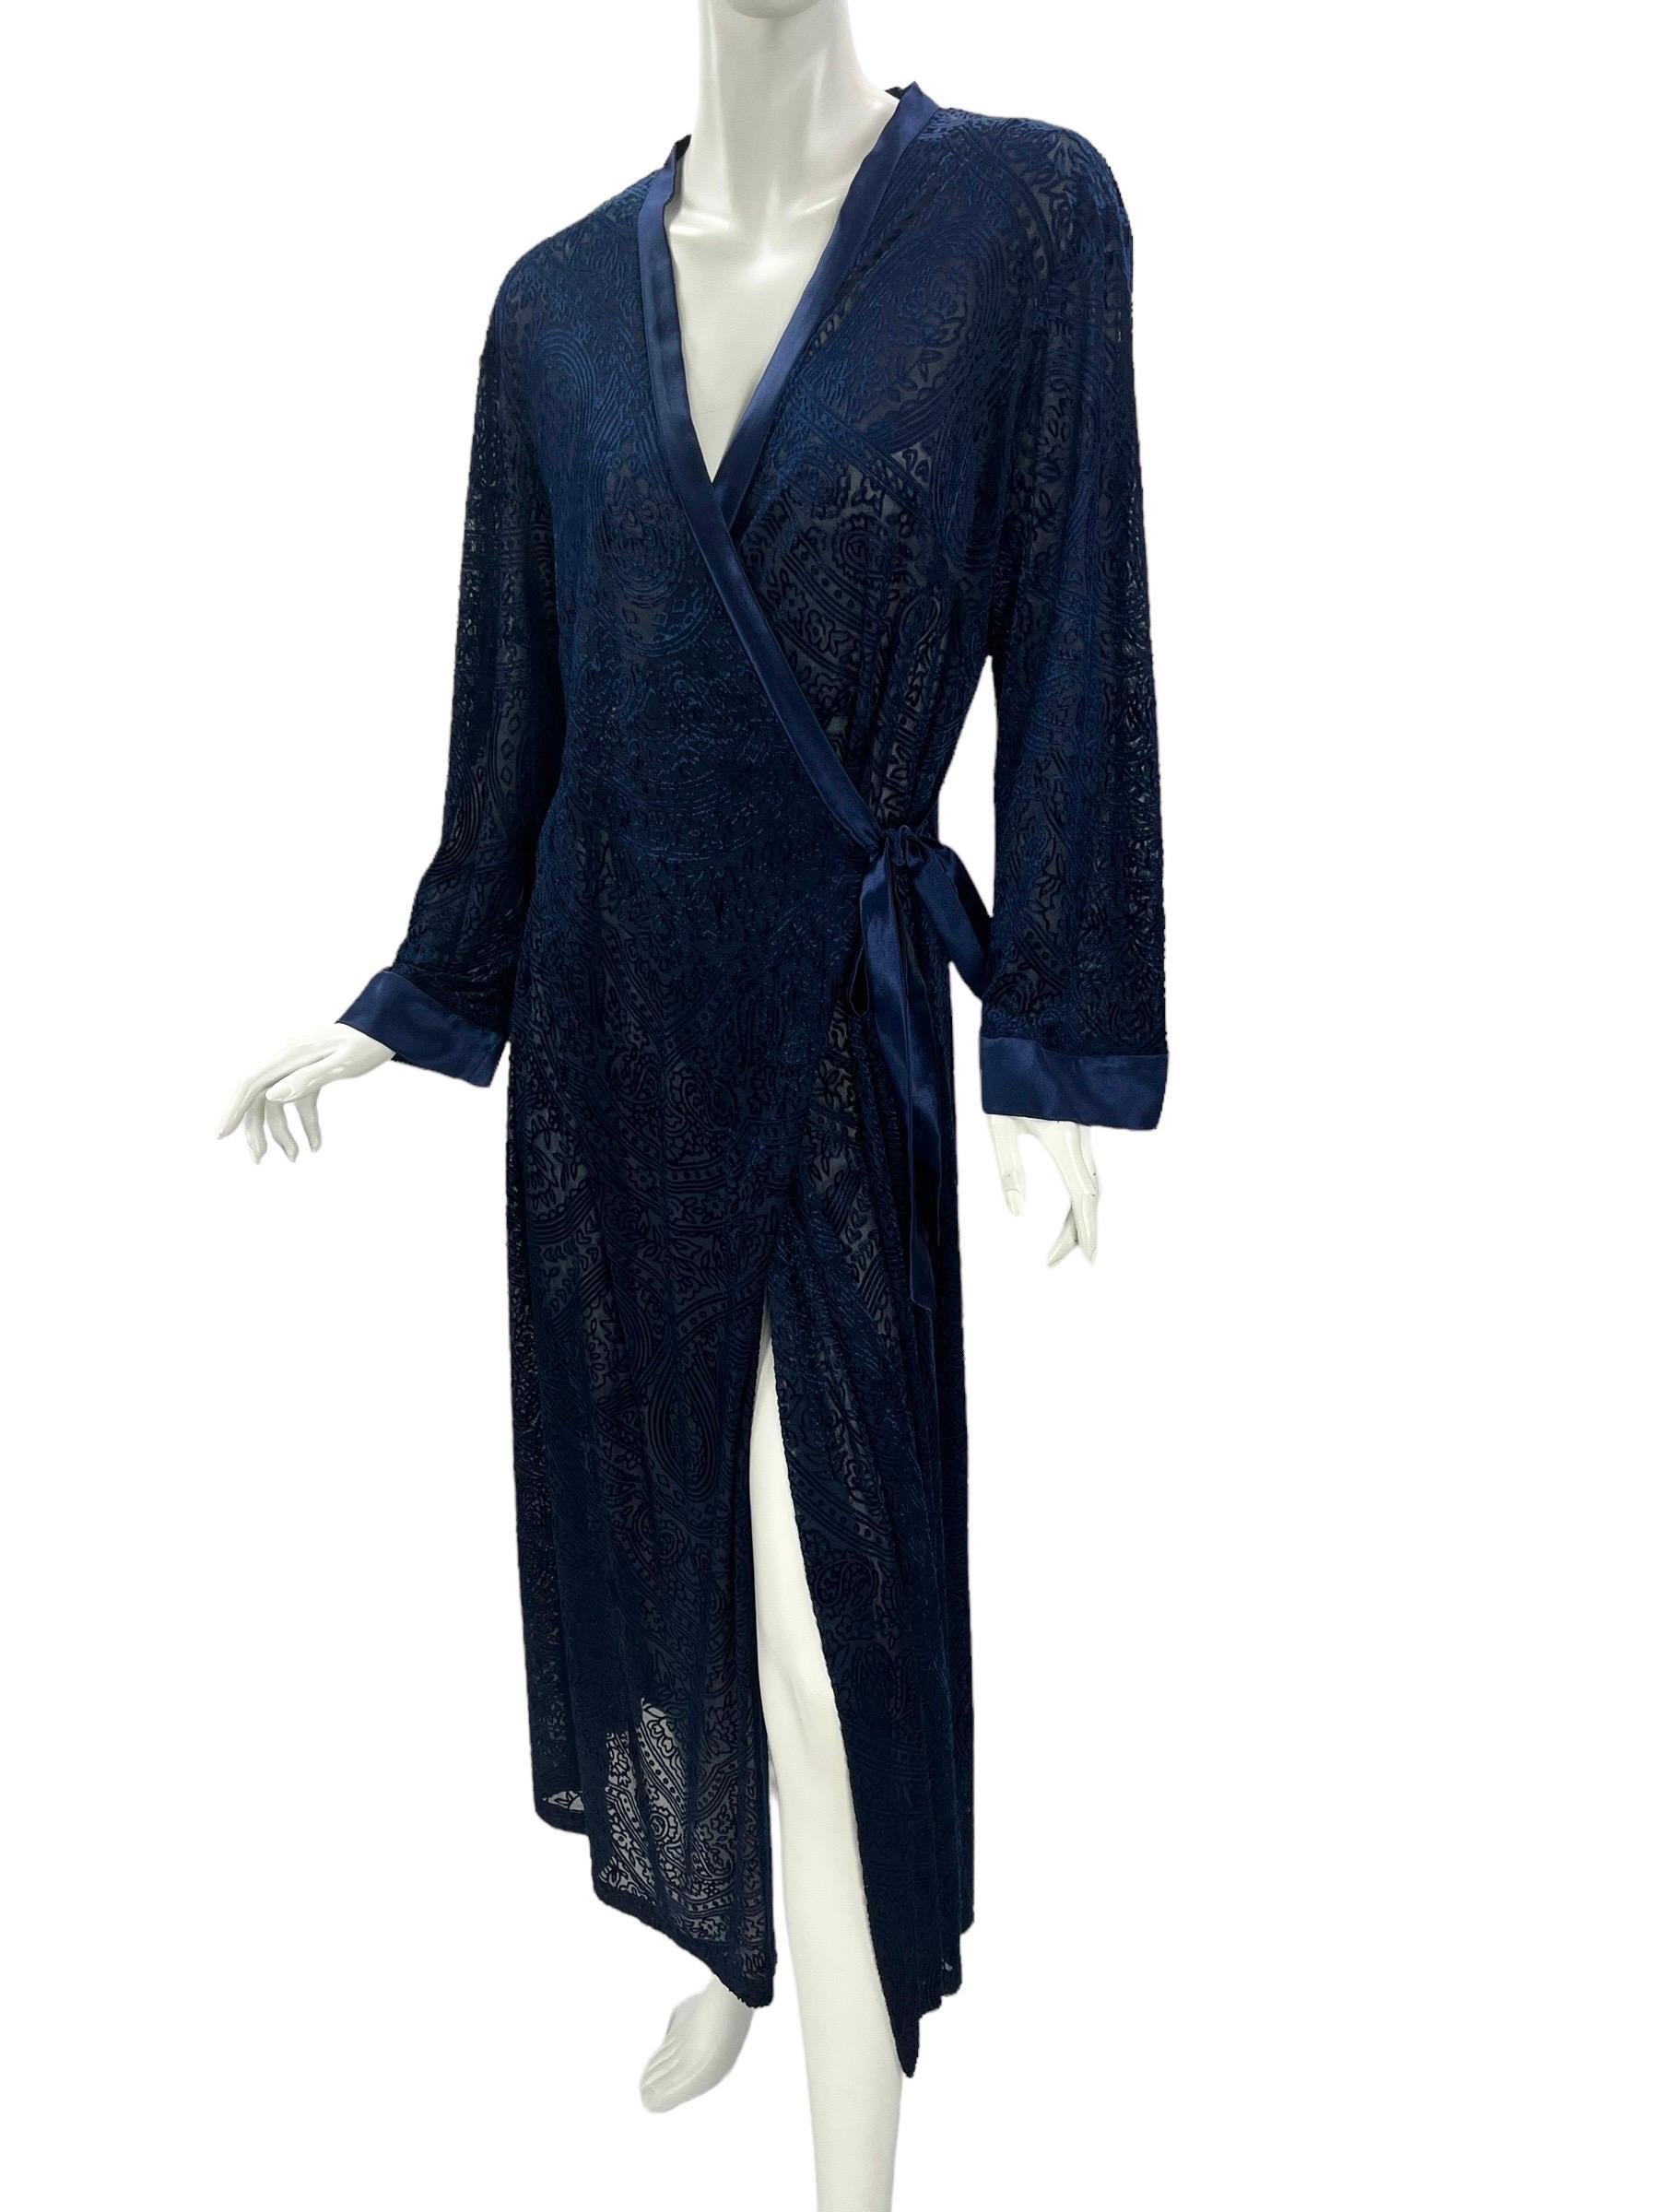 Vintage Oscar de la Renta lounge dress / robe 
Color: midnight blue 
Fabric: devore velvet 
Semisheer
Finished with belt and silk trim
Size M
Measurements: Length 52